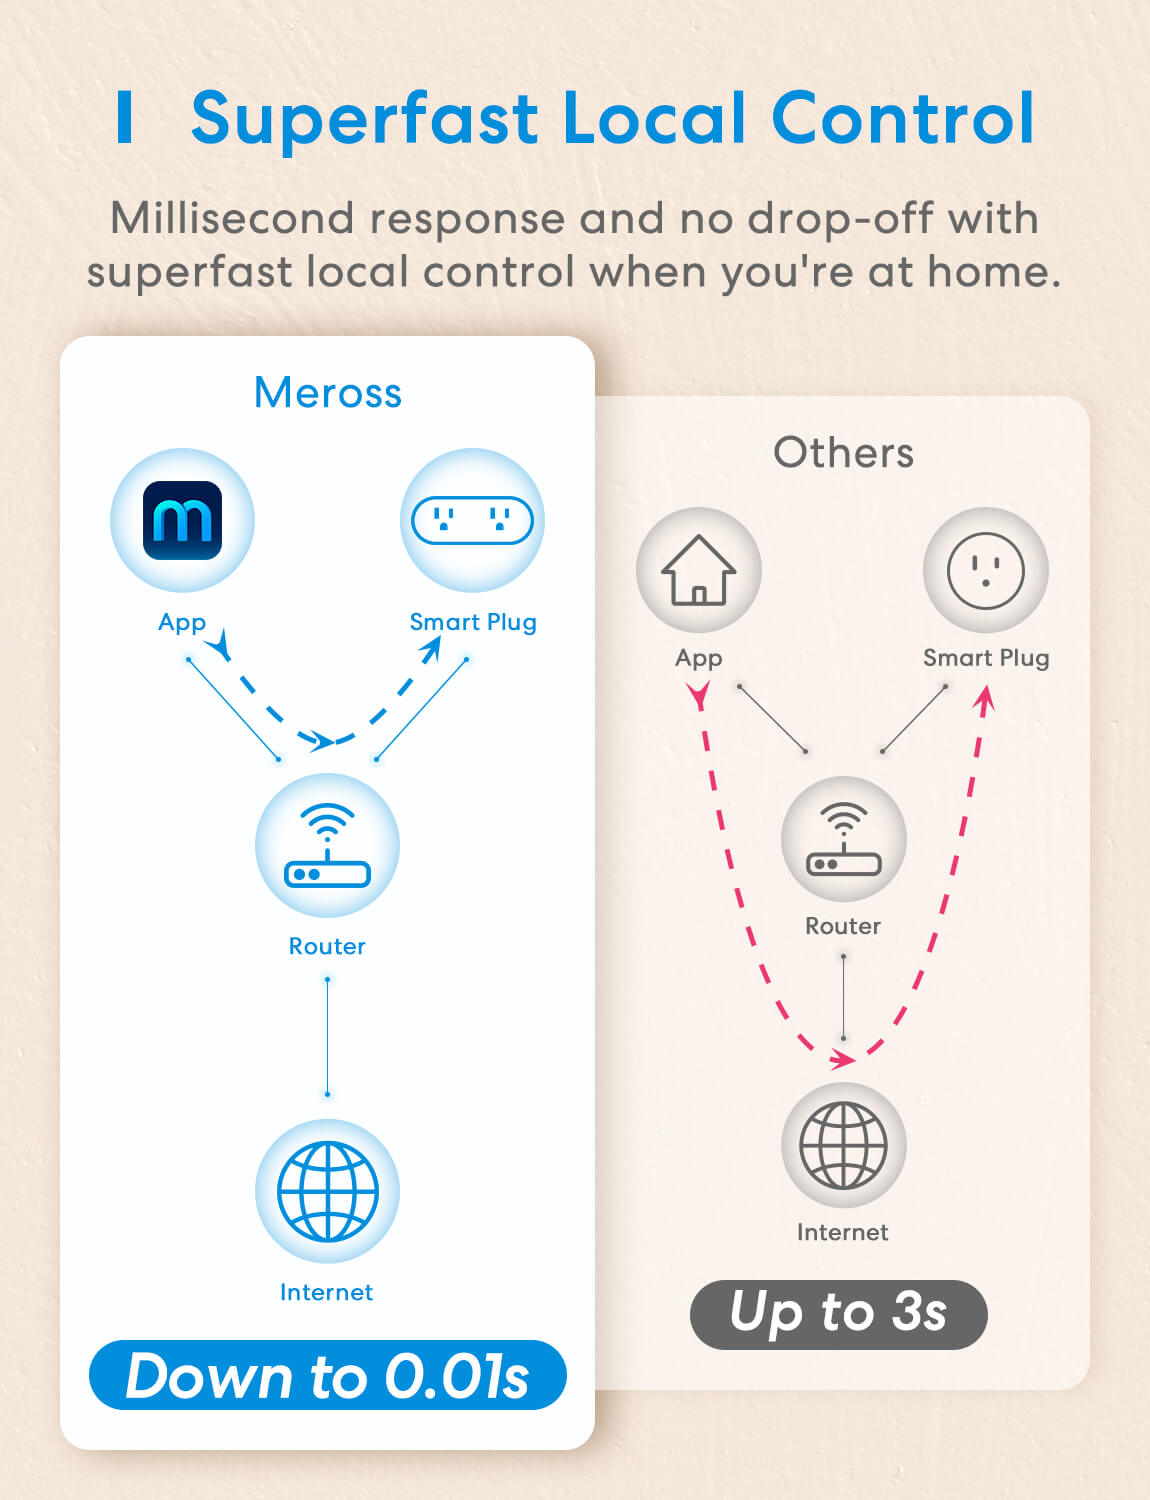 Meross 2 in 1 Smart Wi-Fi Plug, MSS120BHK (US/CA Version)